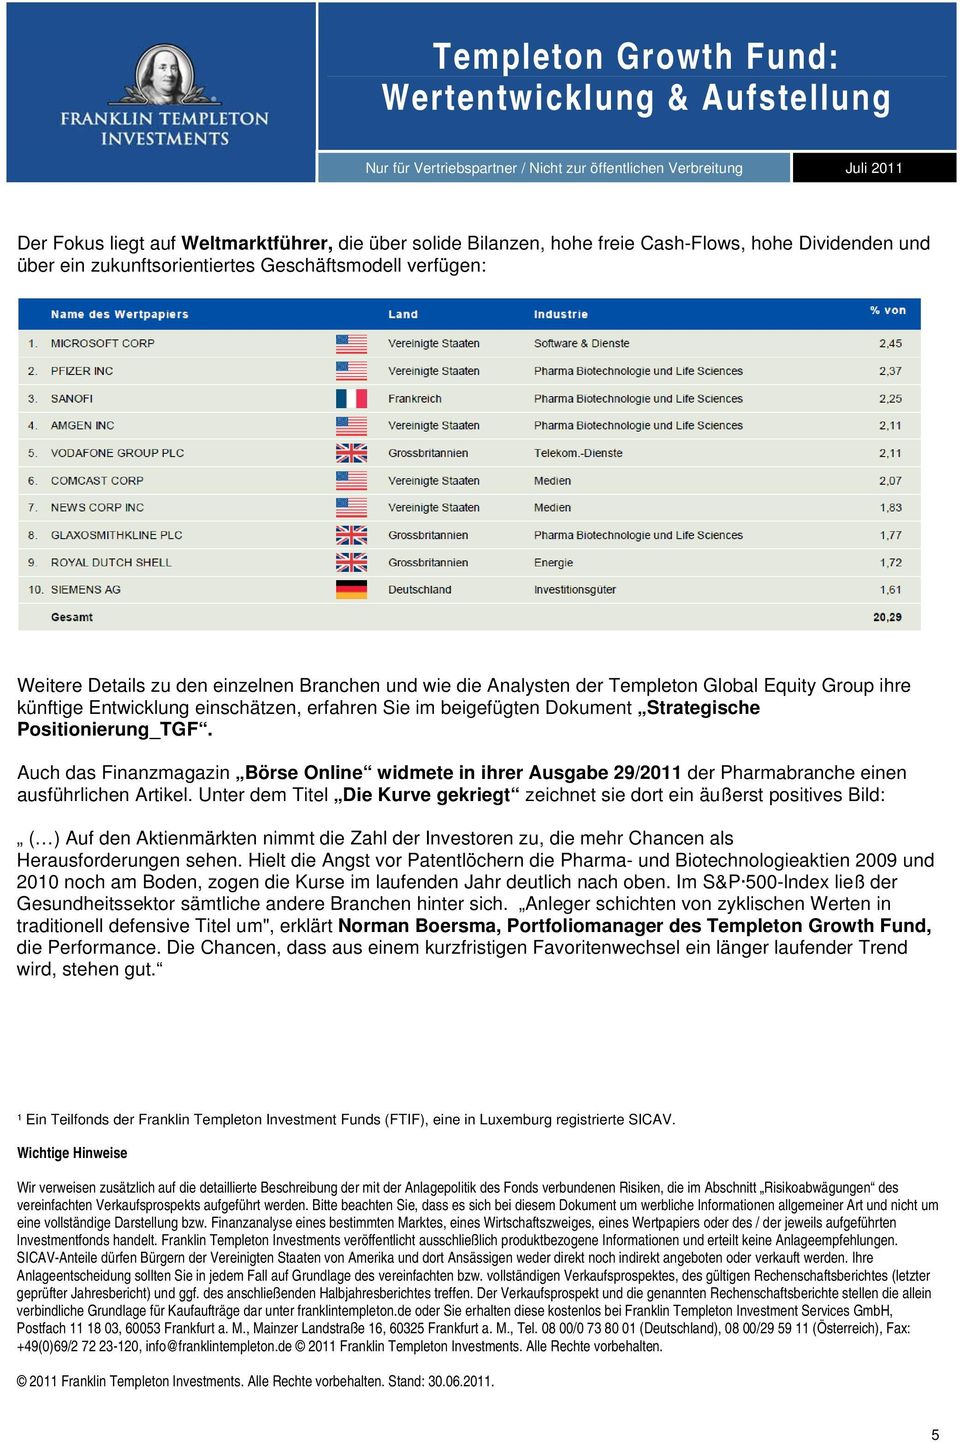 Auch das Finanzmagazin Börse Online widmete in ihrer Ausgabe 29/2011 der Pharmabranche einen ausführlichen Artikel.